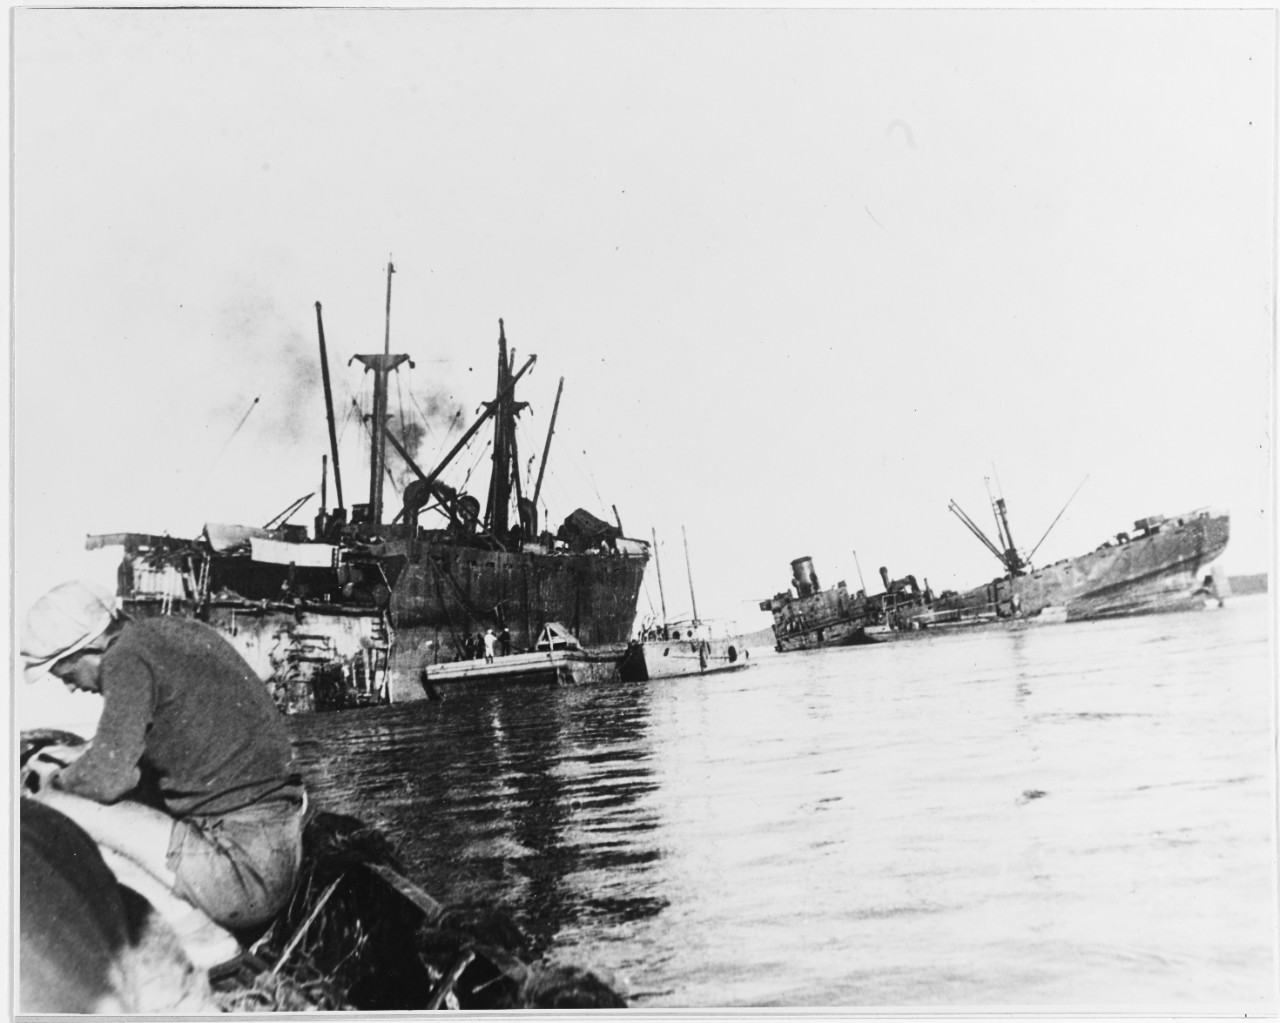 S.S. RUFUS KING, (U.S. merchant cargo ship, 1942-1942)